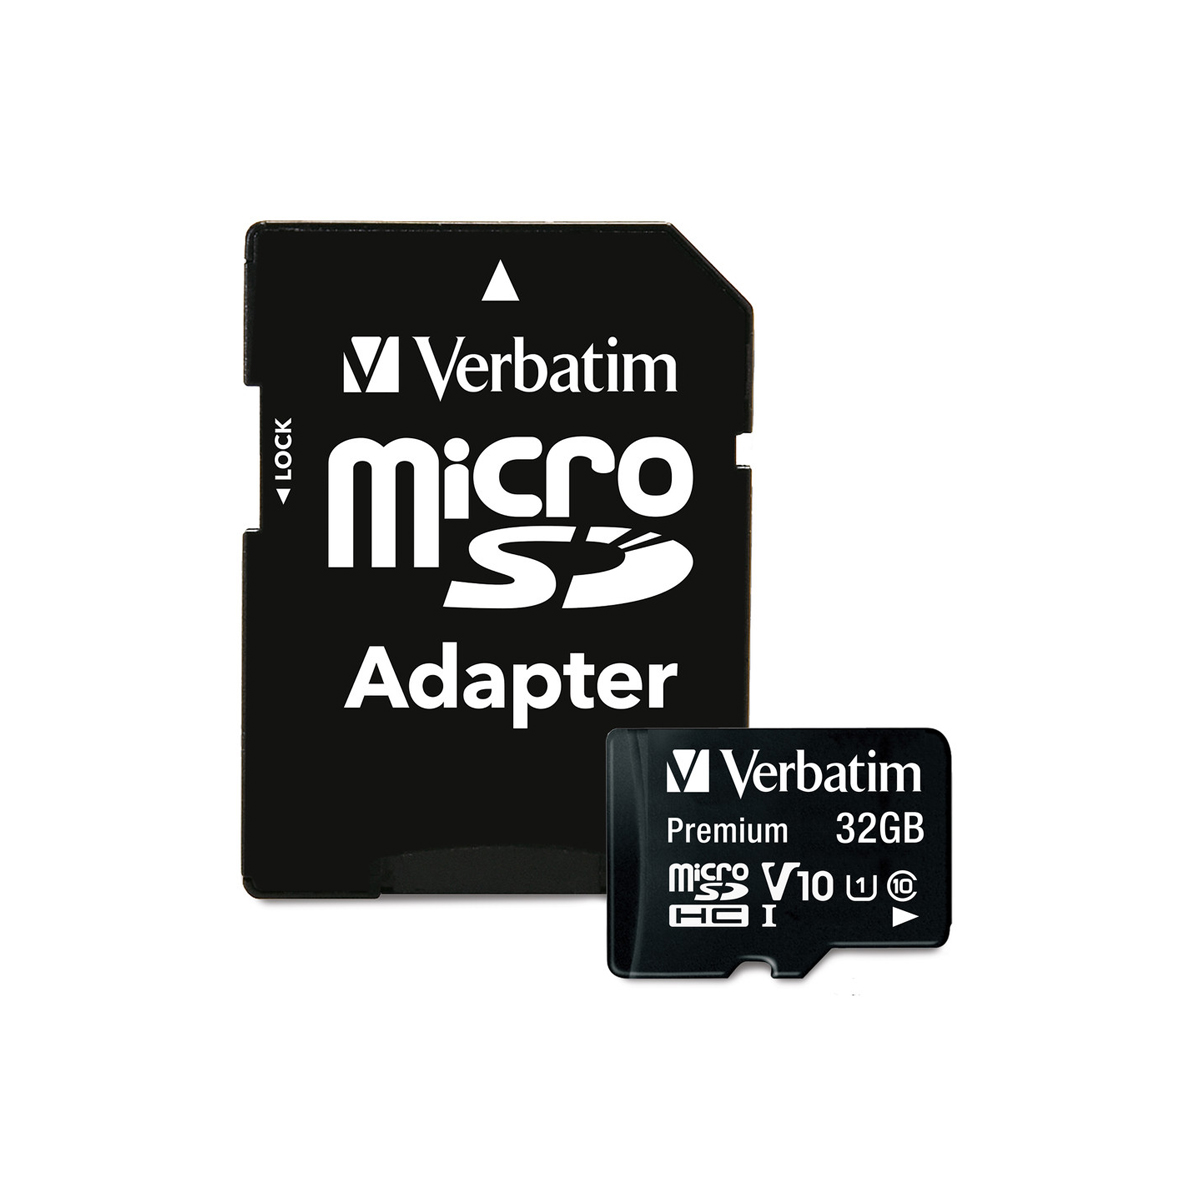 MICRO SD  VERBATIM 44083 32GB CLASE 10 ADAPTADOR SD